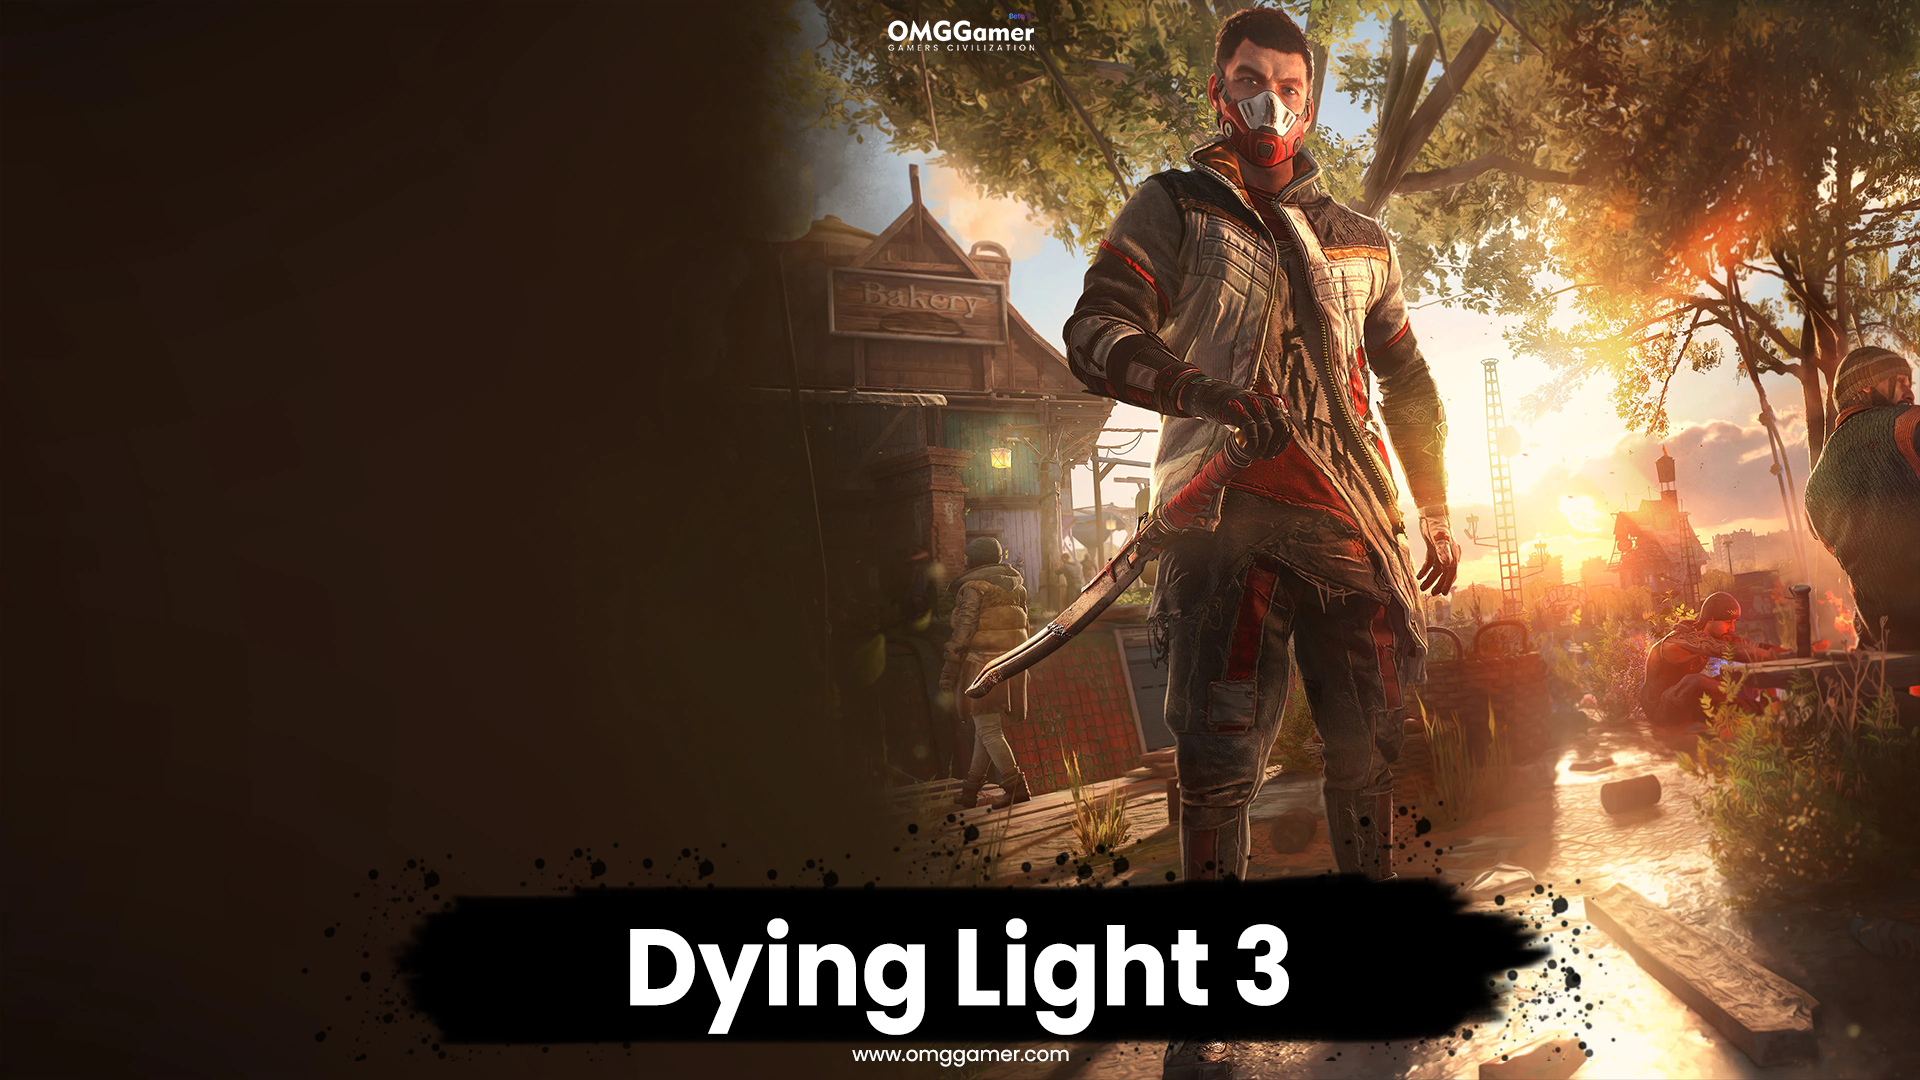 Dying Light 3 Release Date, Trailer & Rumors